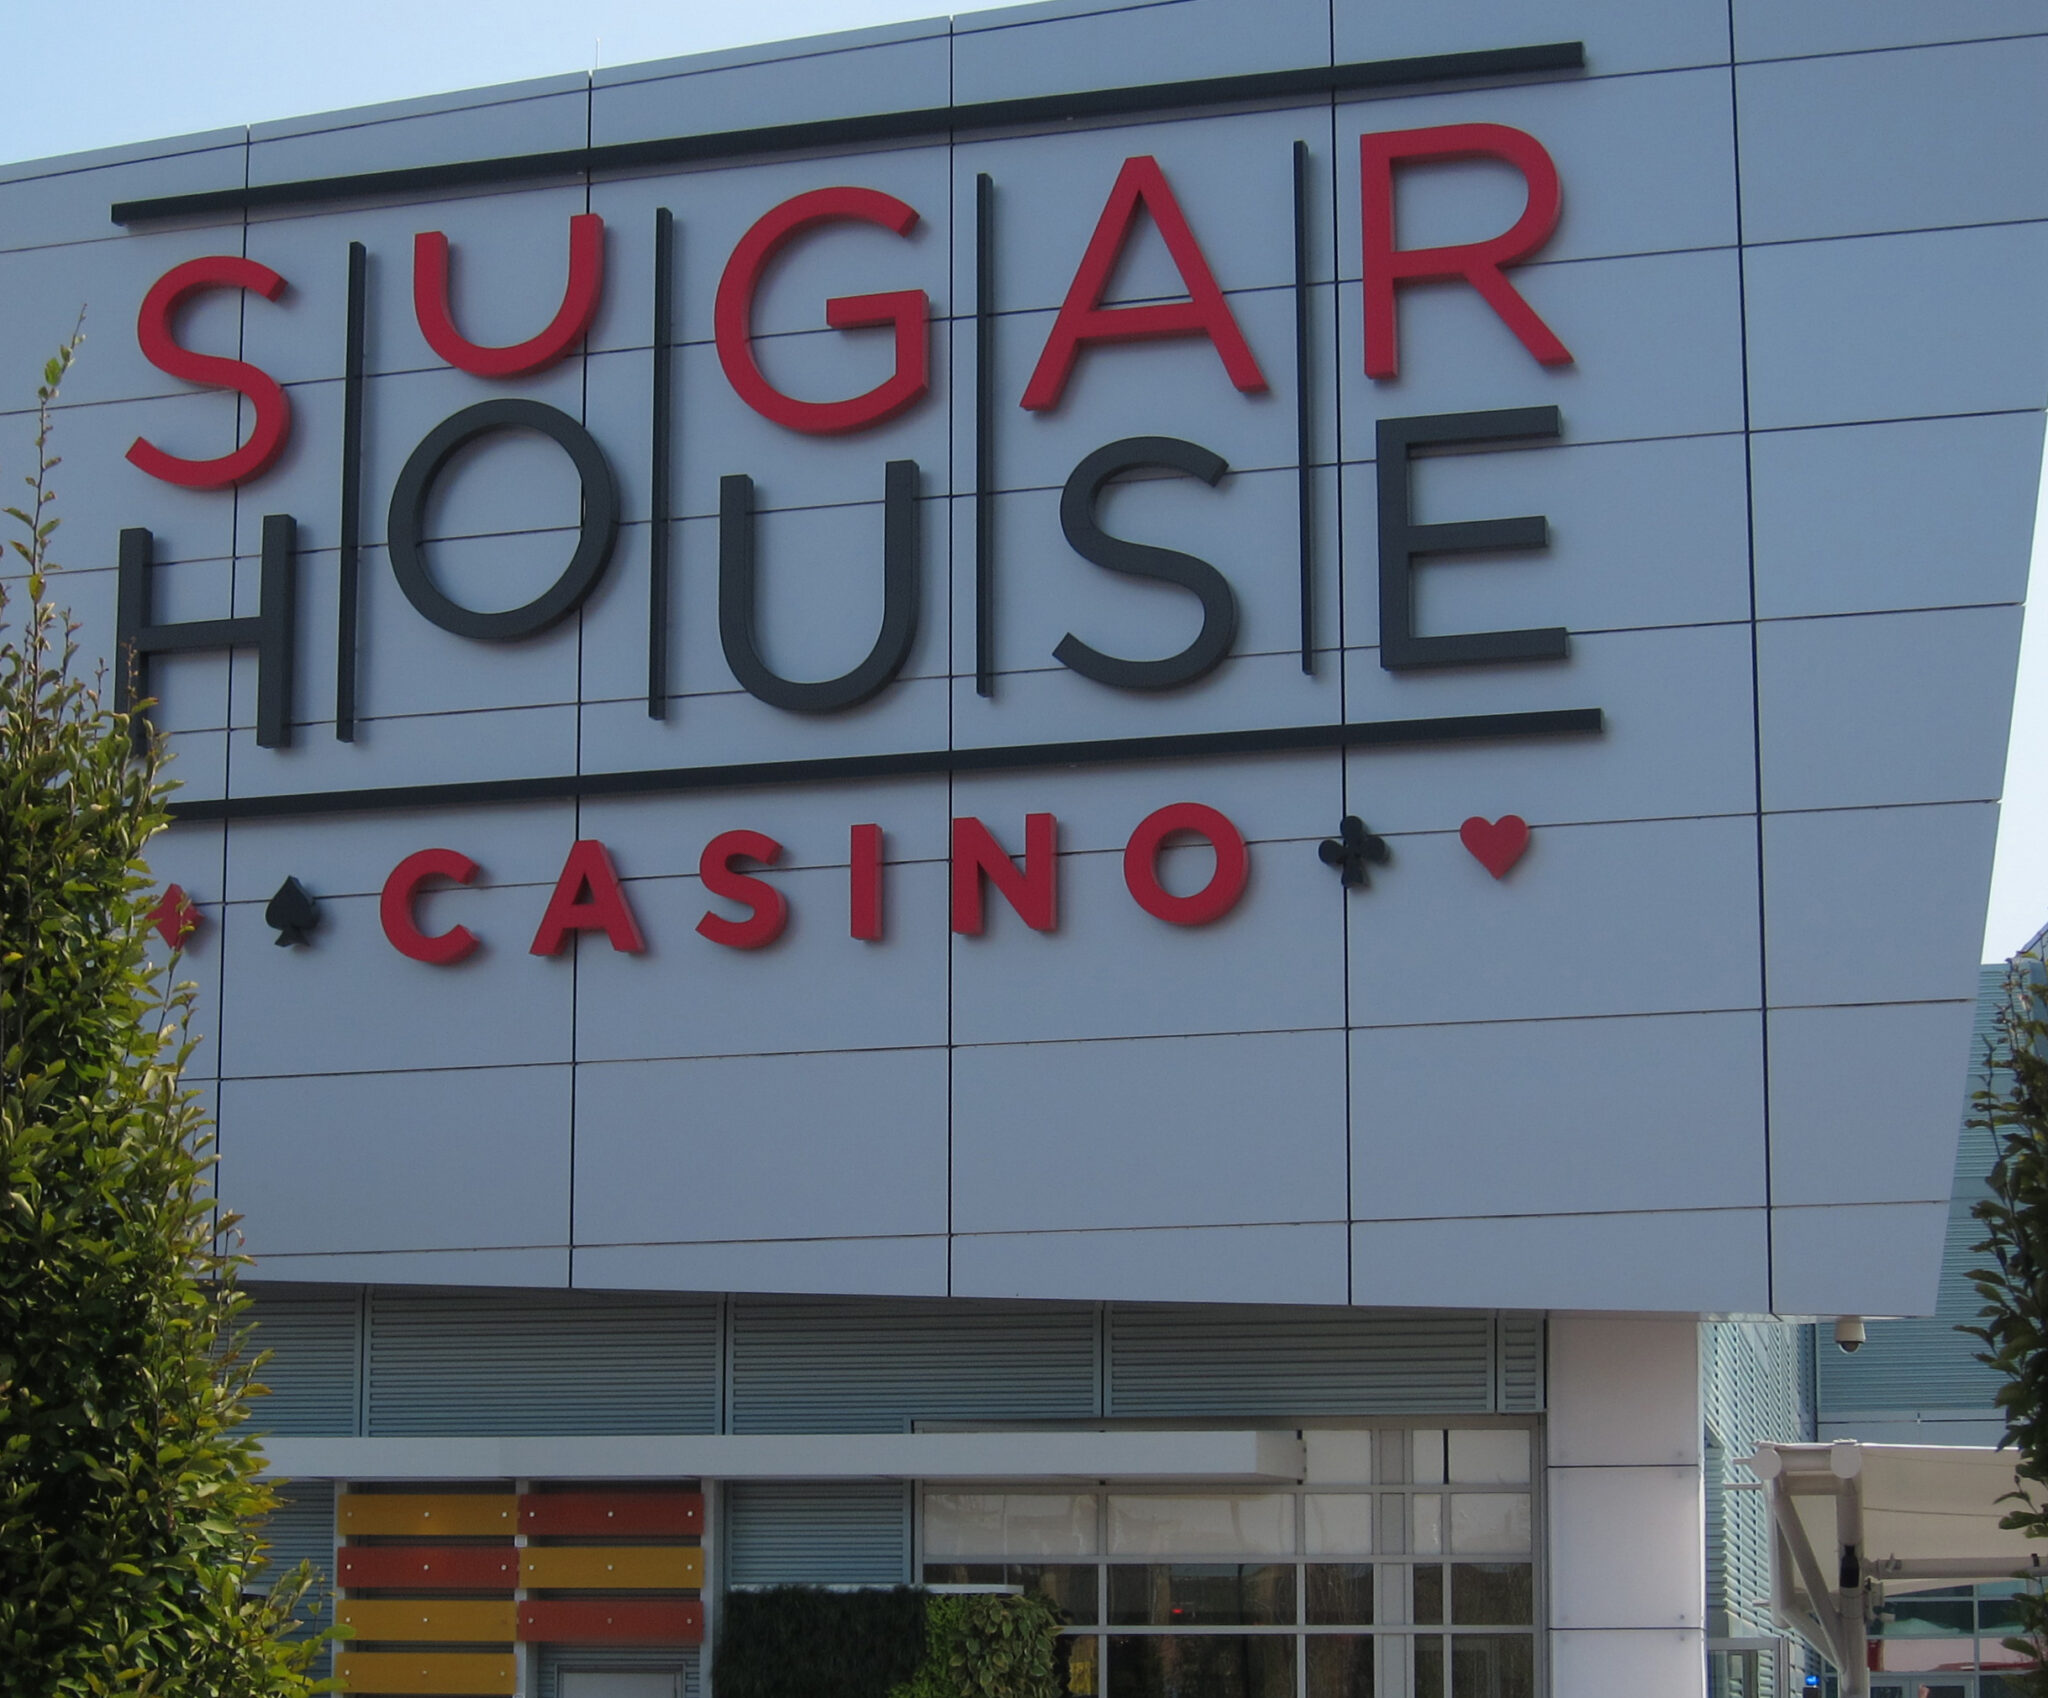 casino for fun sugarhouse